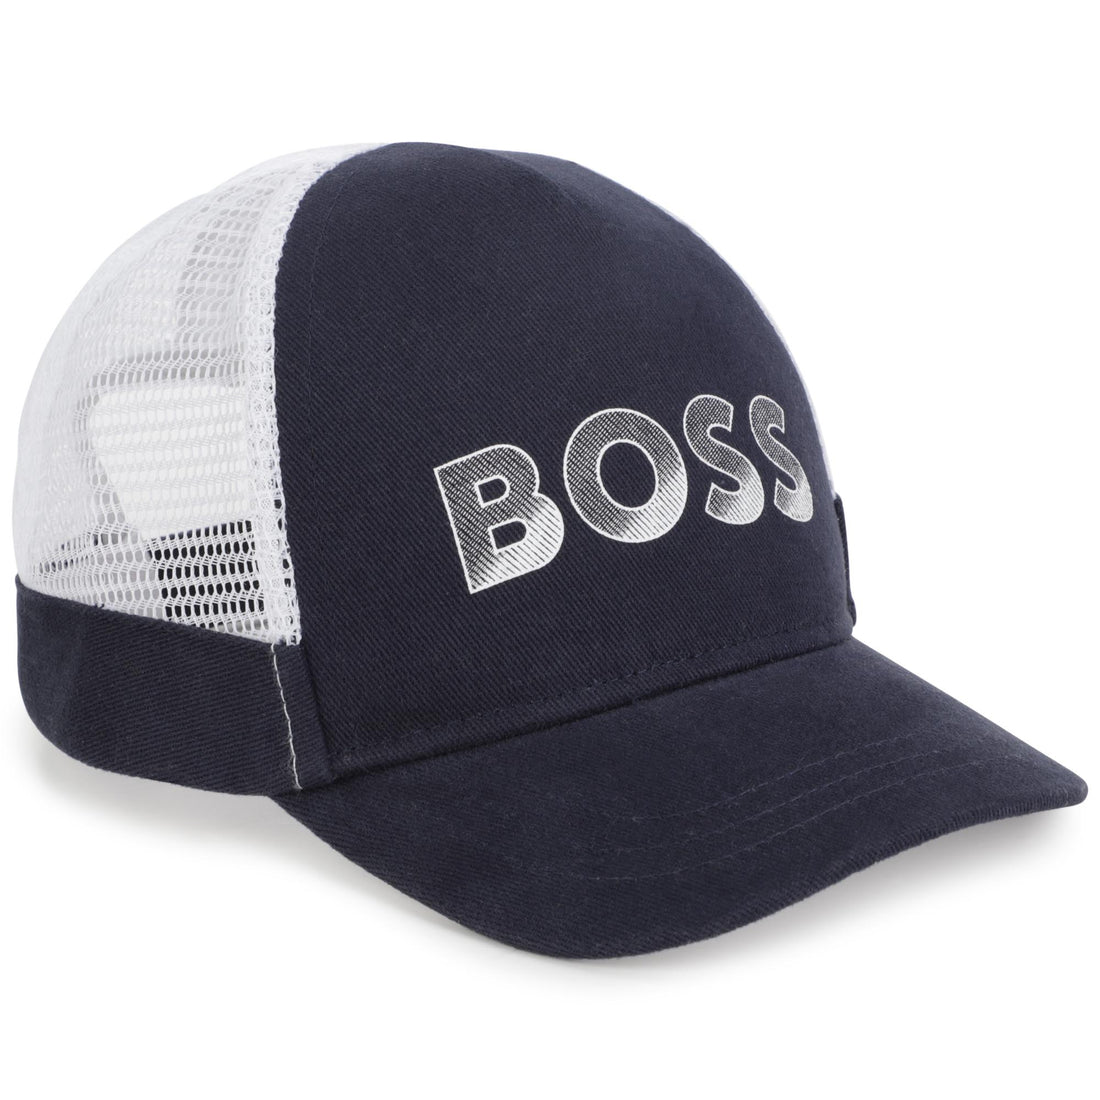 Hugo Boss Cap Style: J01141